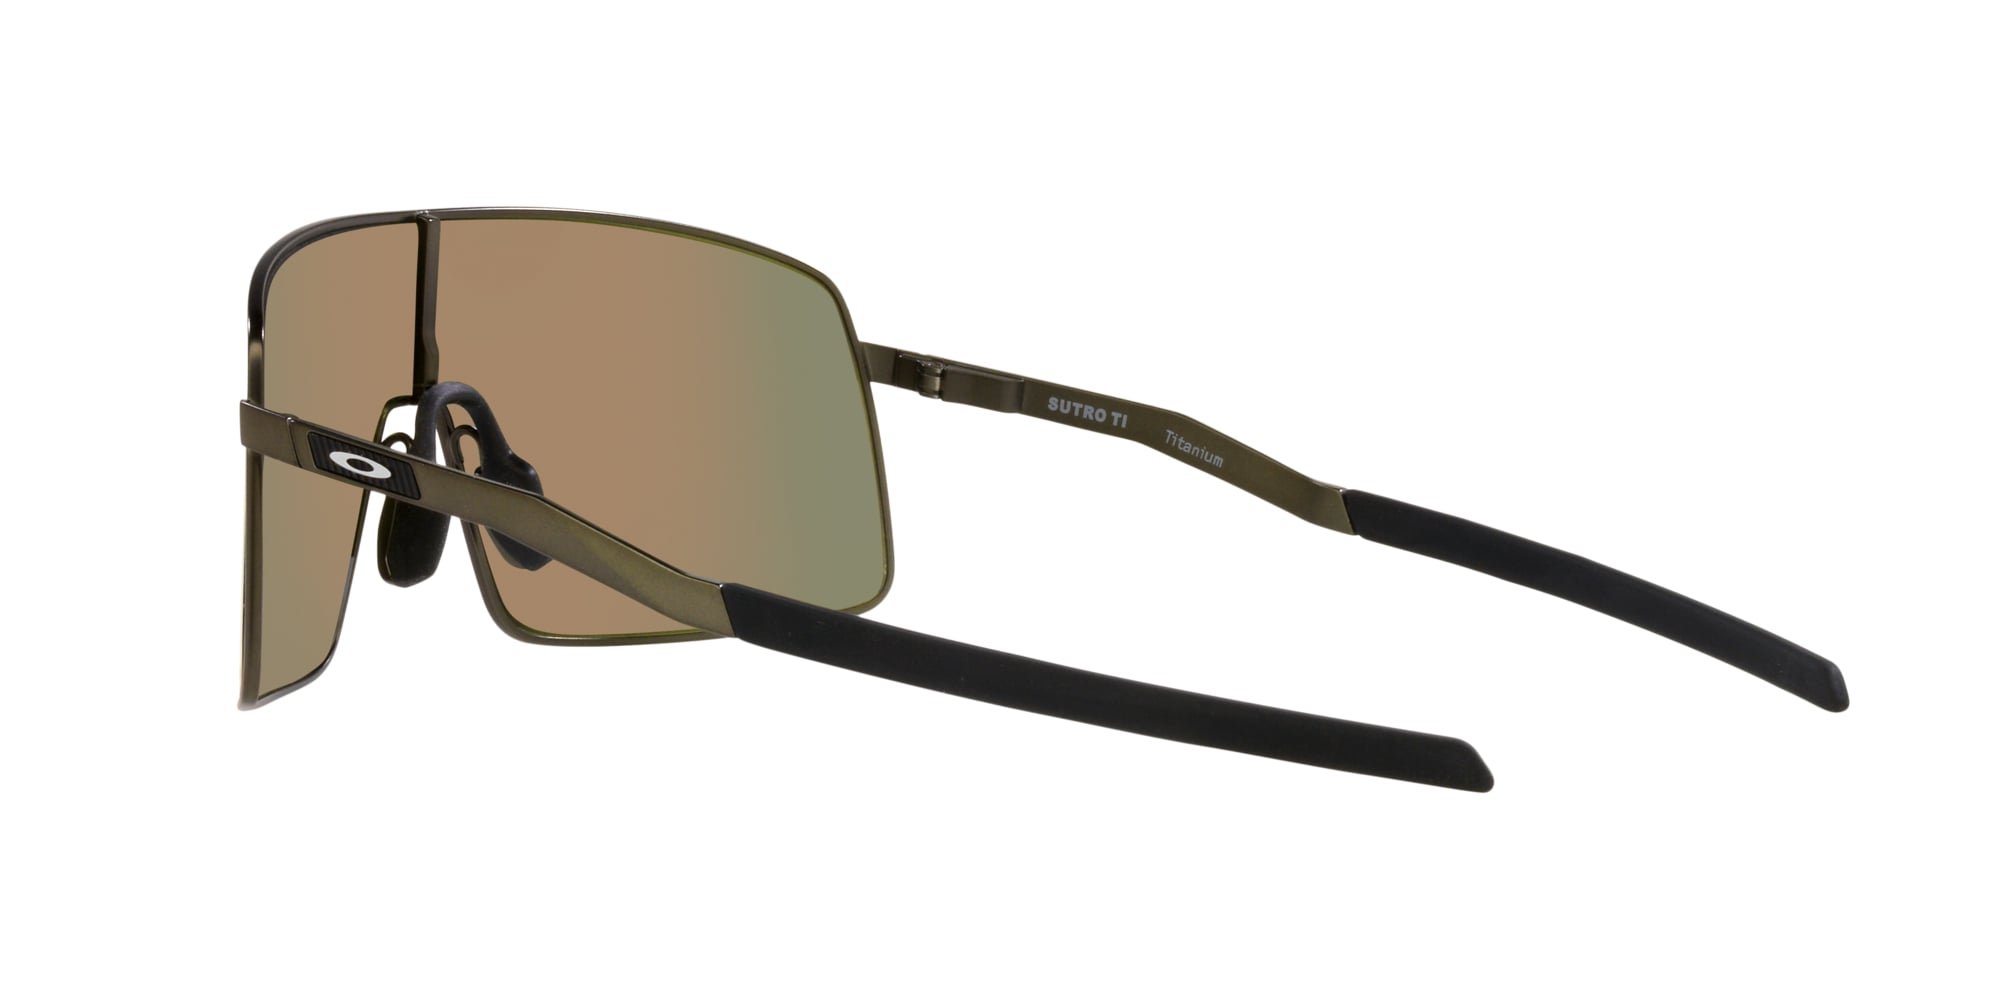 Das Bild zeigt die Sonnenbrille OO6013 02 von der Marke Oakley in carbon.